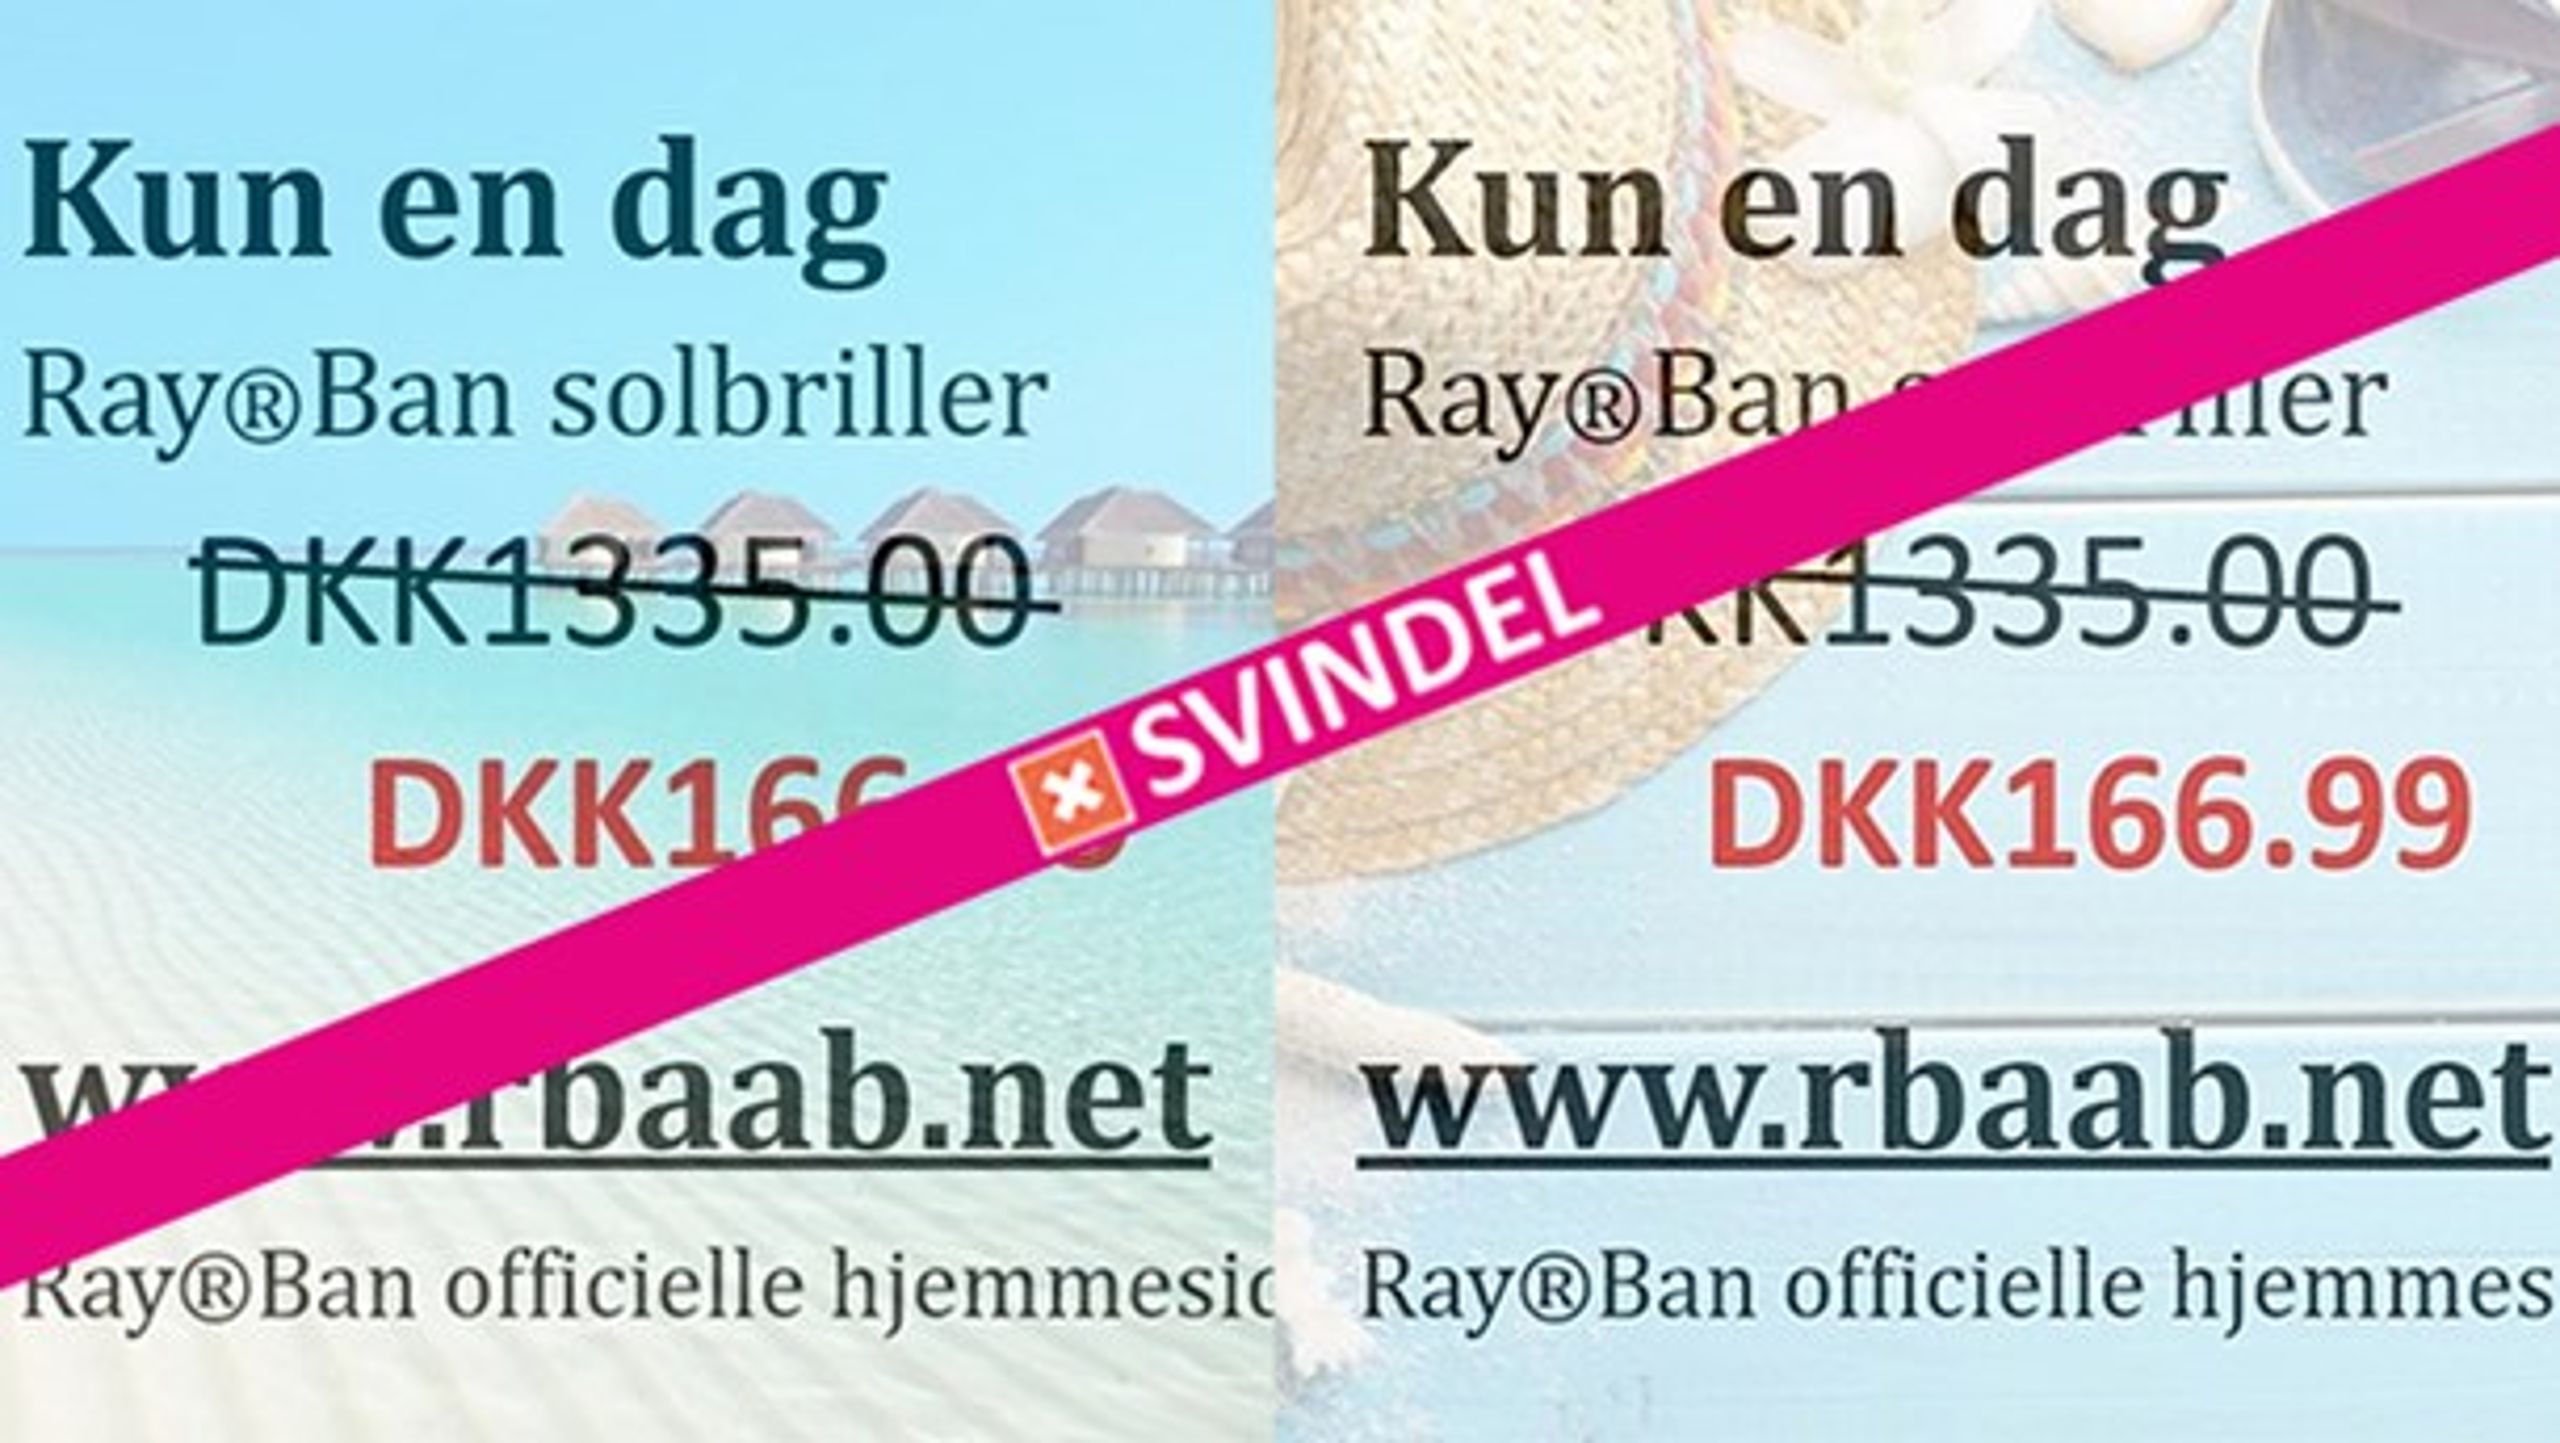 To eksempler på svindelannoncerne for Ray-Ban-solbriller, som adskillige danske facebookbrugere ubevidst slår op på deres væg.